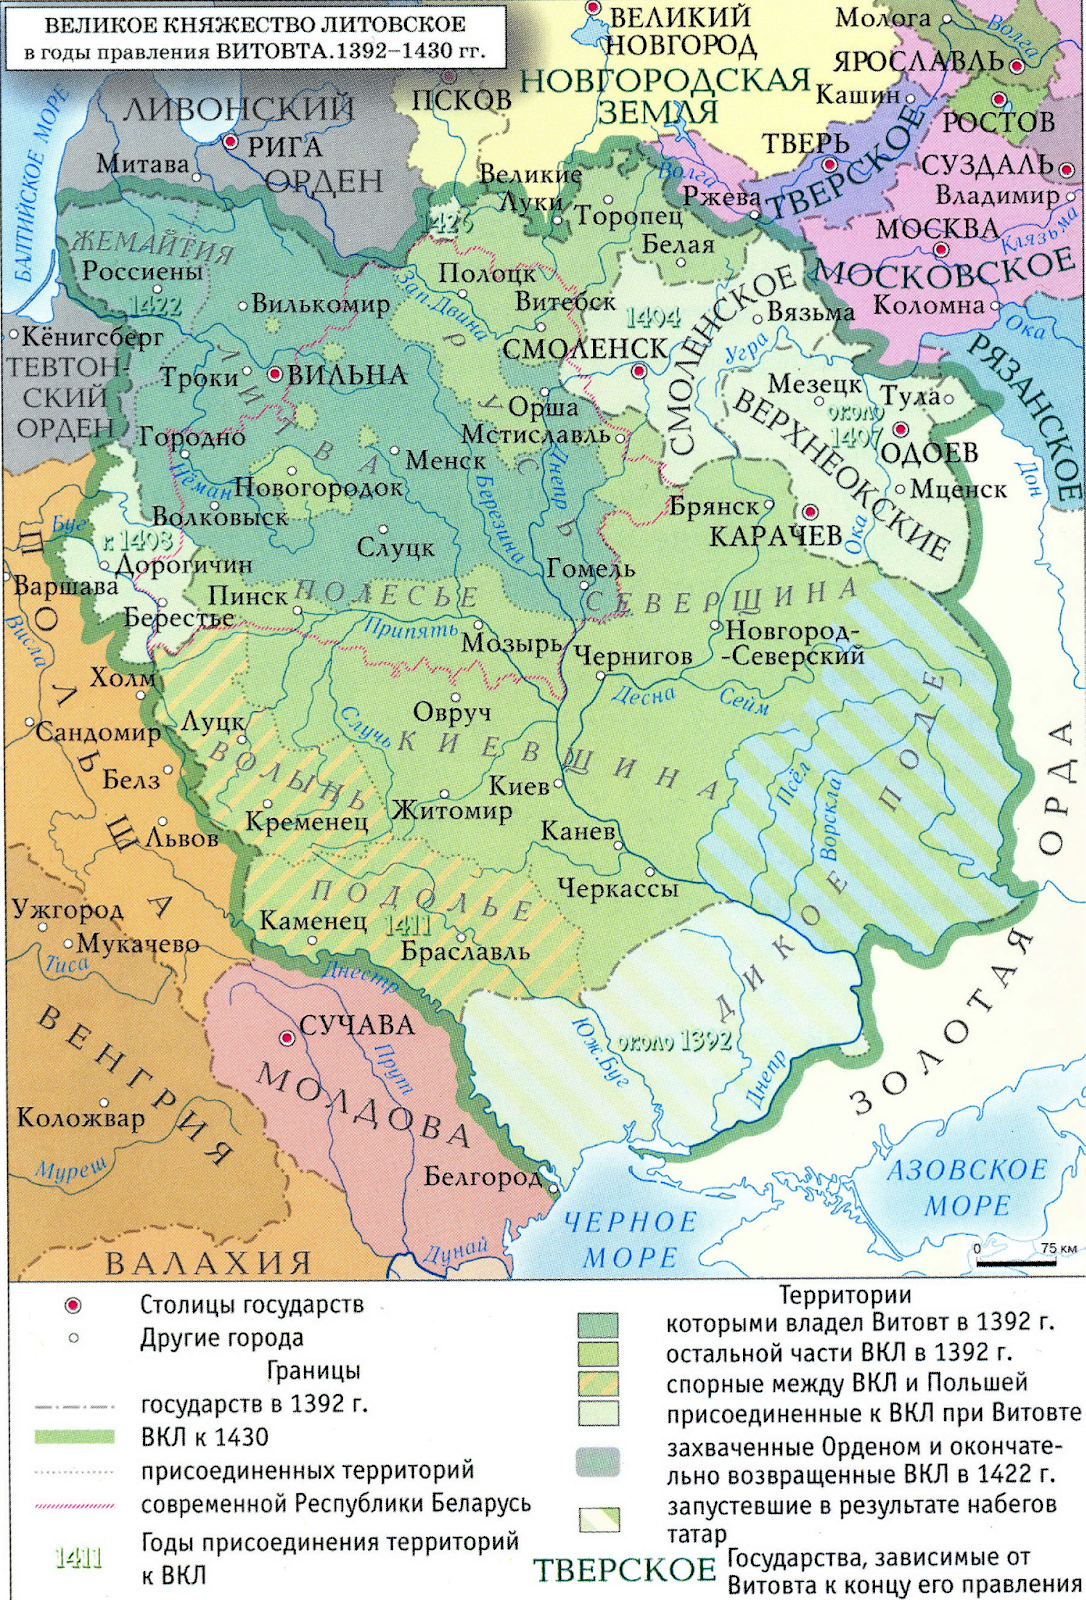 Русские земли вошедшие в состав литовского княжества